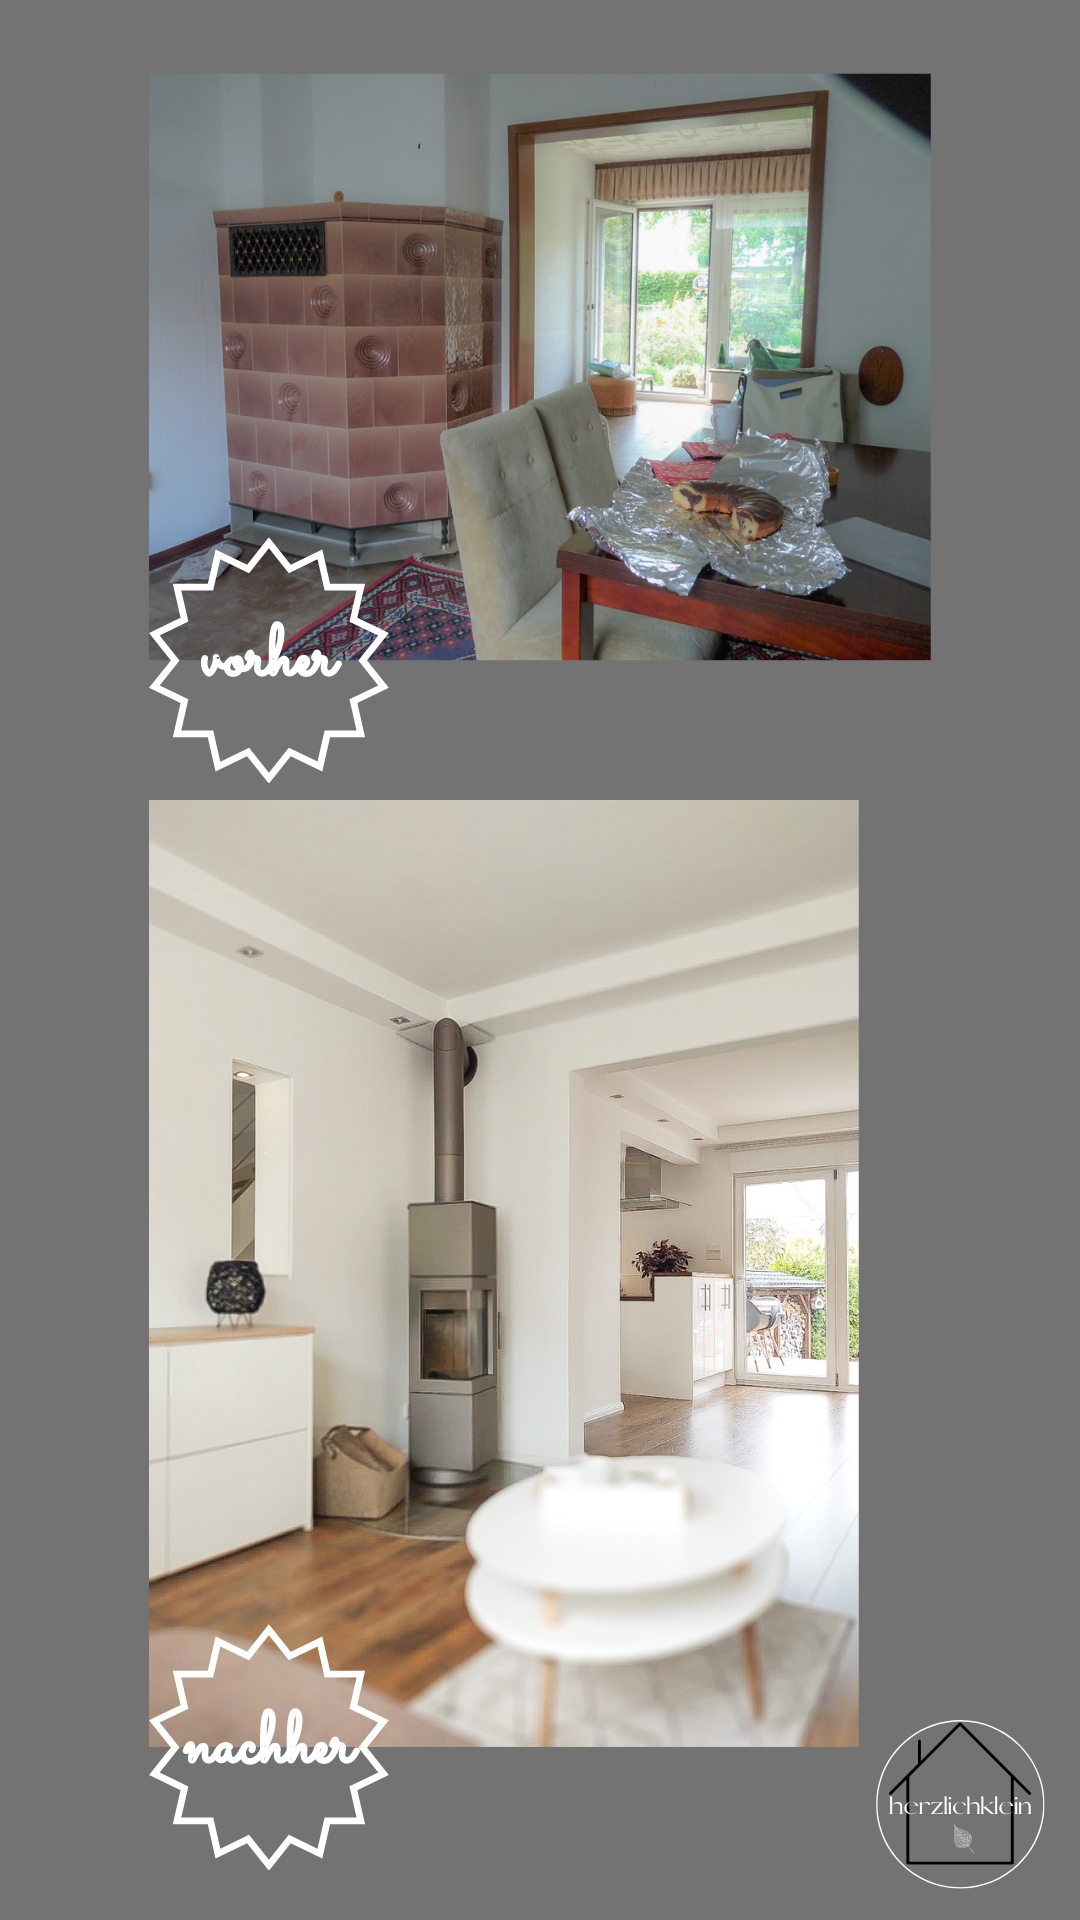 Reihenhausverwandlung - how to!
Die Entstehung unseres Traumhauses 🤍
Part 2
#livingroom #reihenhaus #vorhernachher